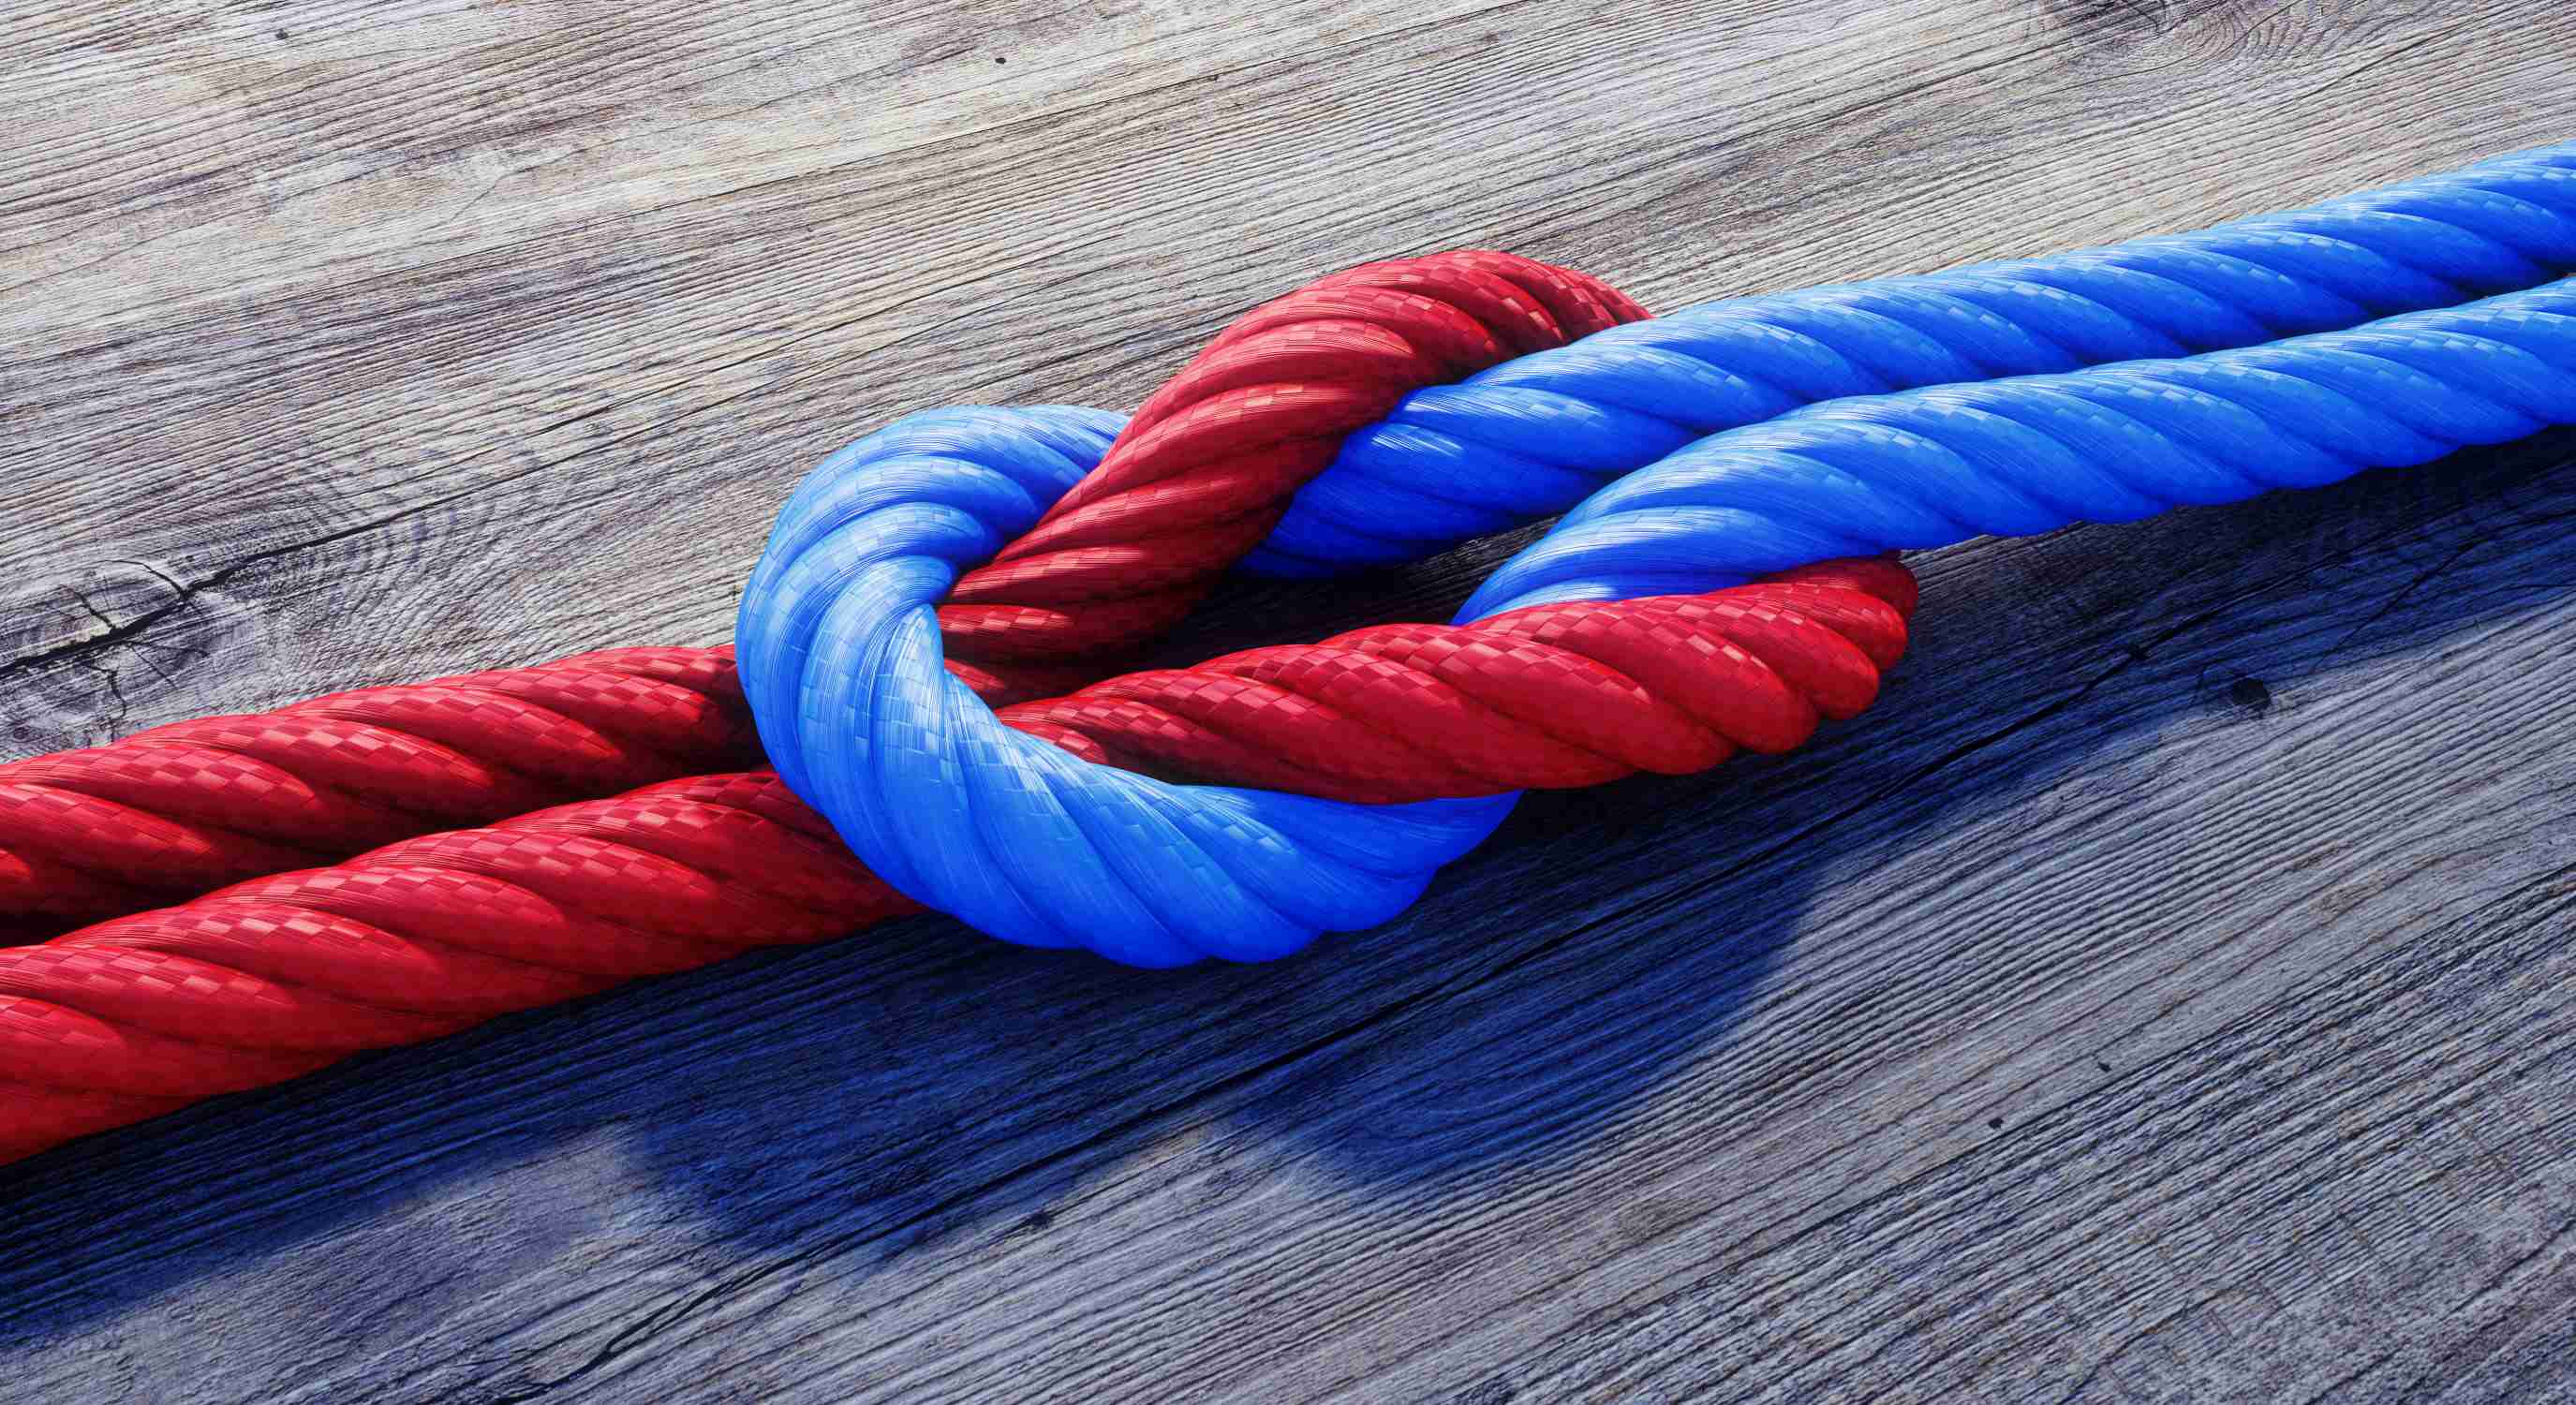 Ein rotes und ein blaues Seil laufen aufeinander zu und verschlingen sich in der Mitte ineinander Knoten